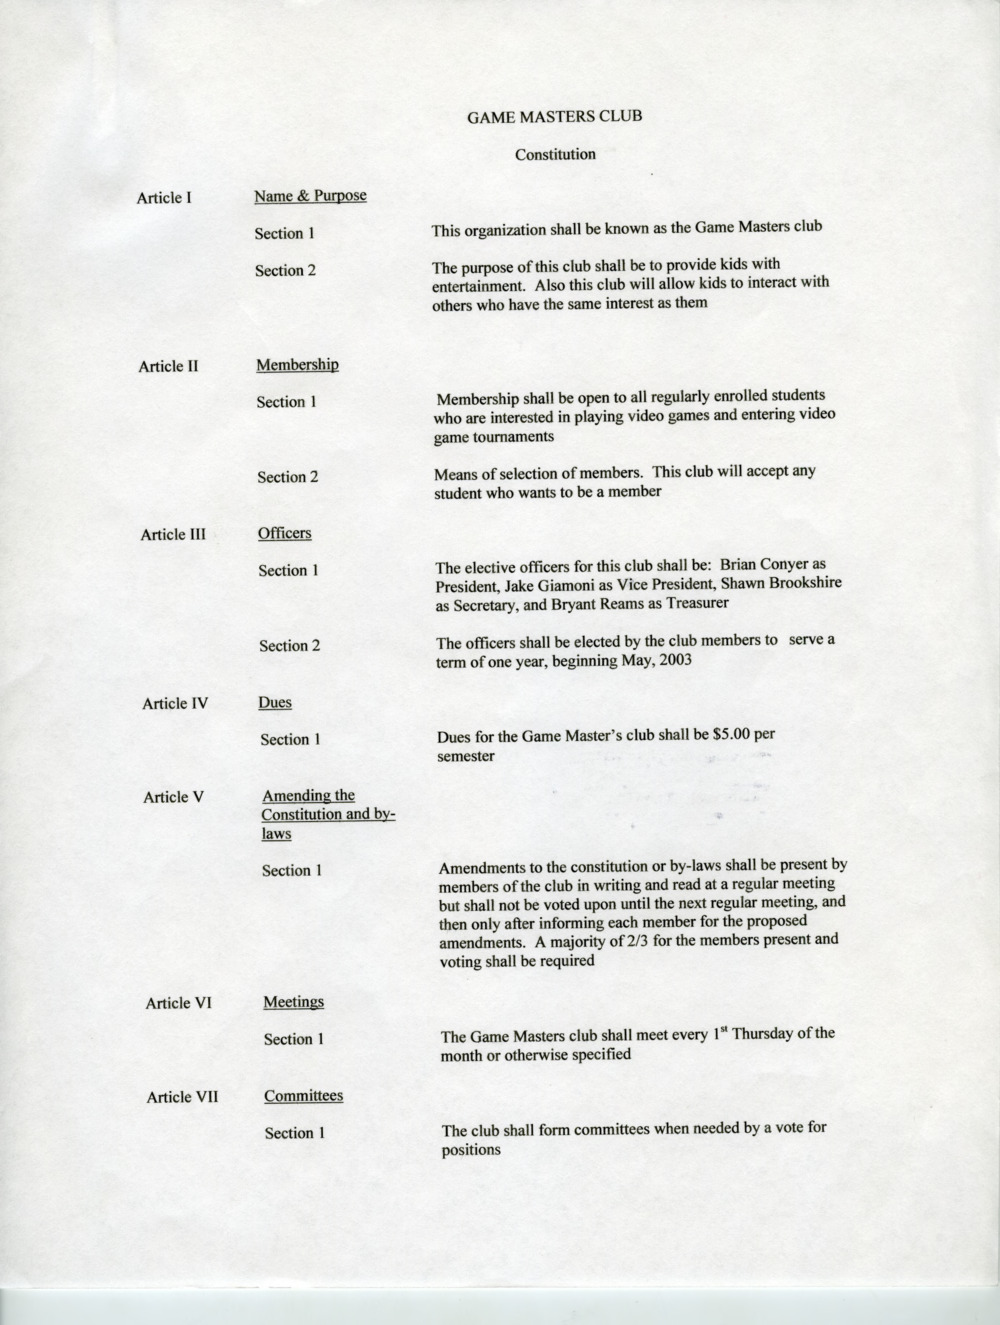 Game Master's Club constitution, 2003.